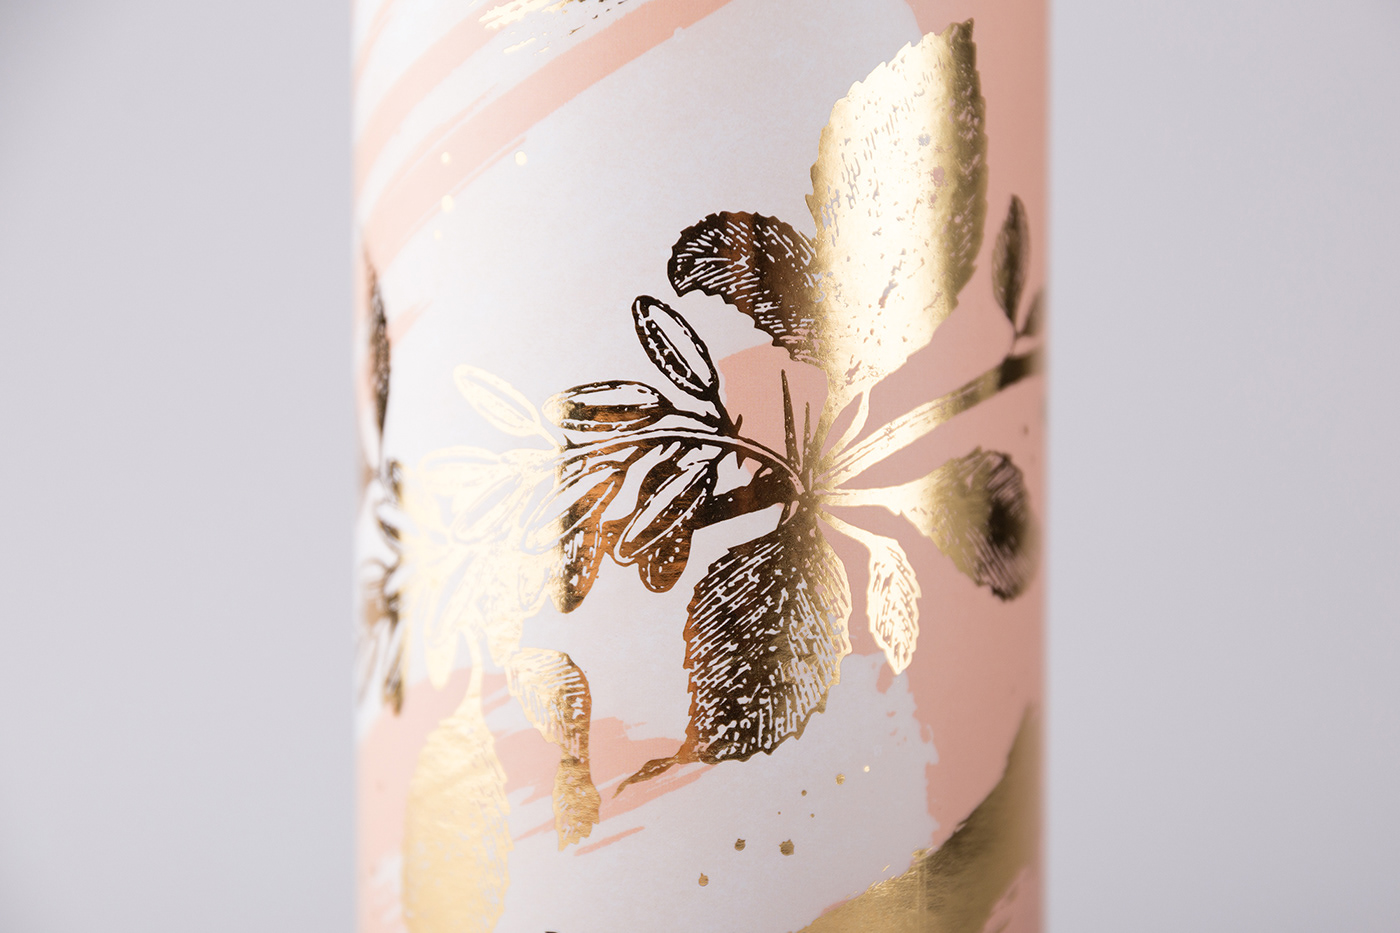 Packaging packaging design branding  gold foil foxtrot poland beauty tube skincare